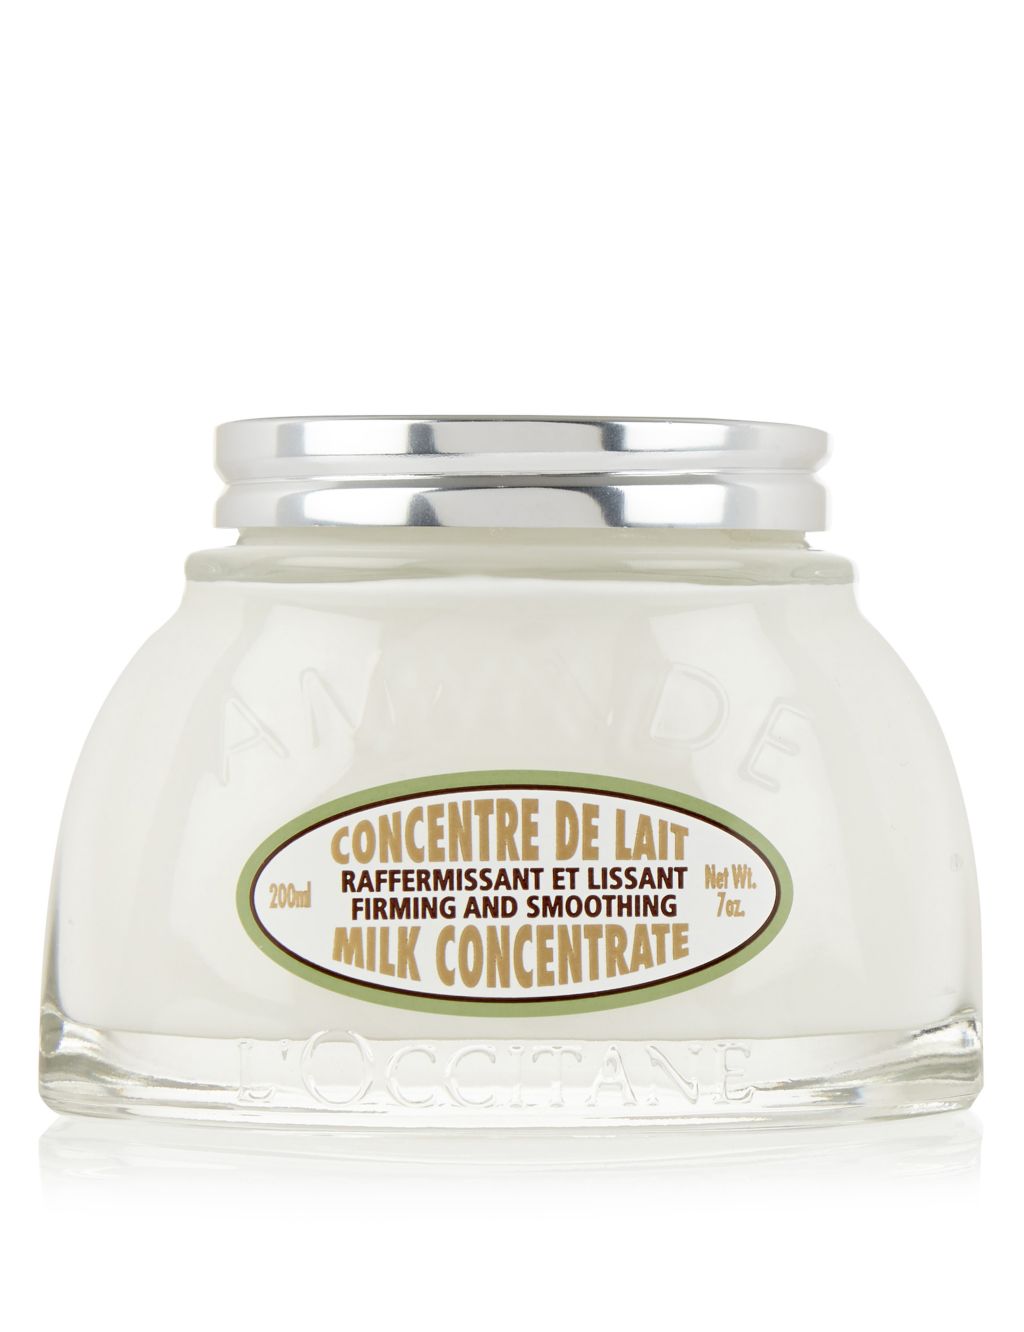 Almond Milk Concentrate Body Cream 200ml 1 of 6